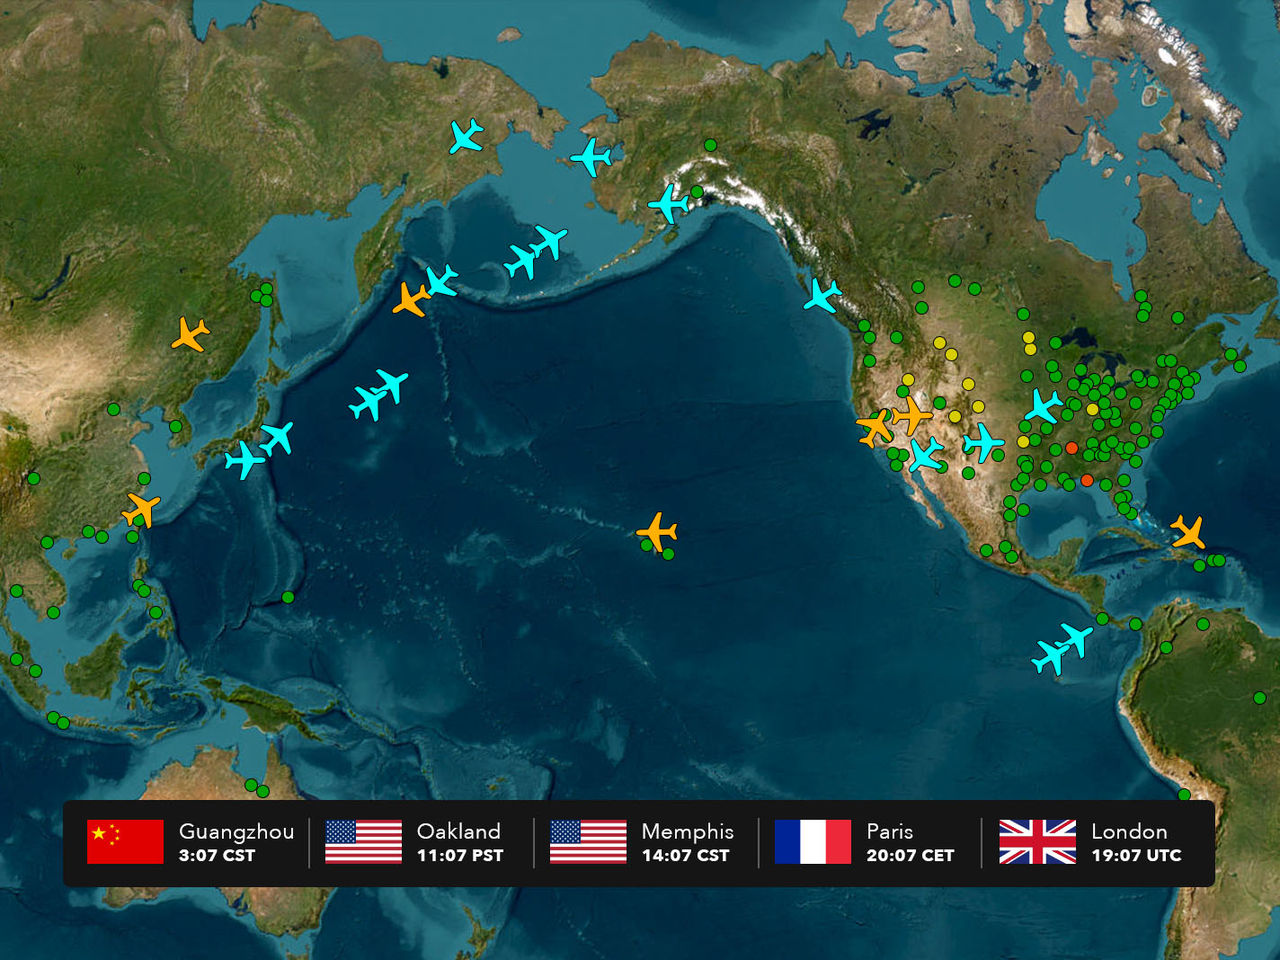 خريطة للكرة الأرضية تظهر نقاطًا وأيقونات على شكل طائرات بألوان مختلفة، مع شريط معروض في الأسفل يوضح 5 مناطق زمنية